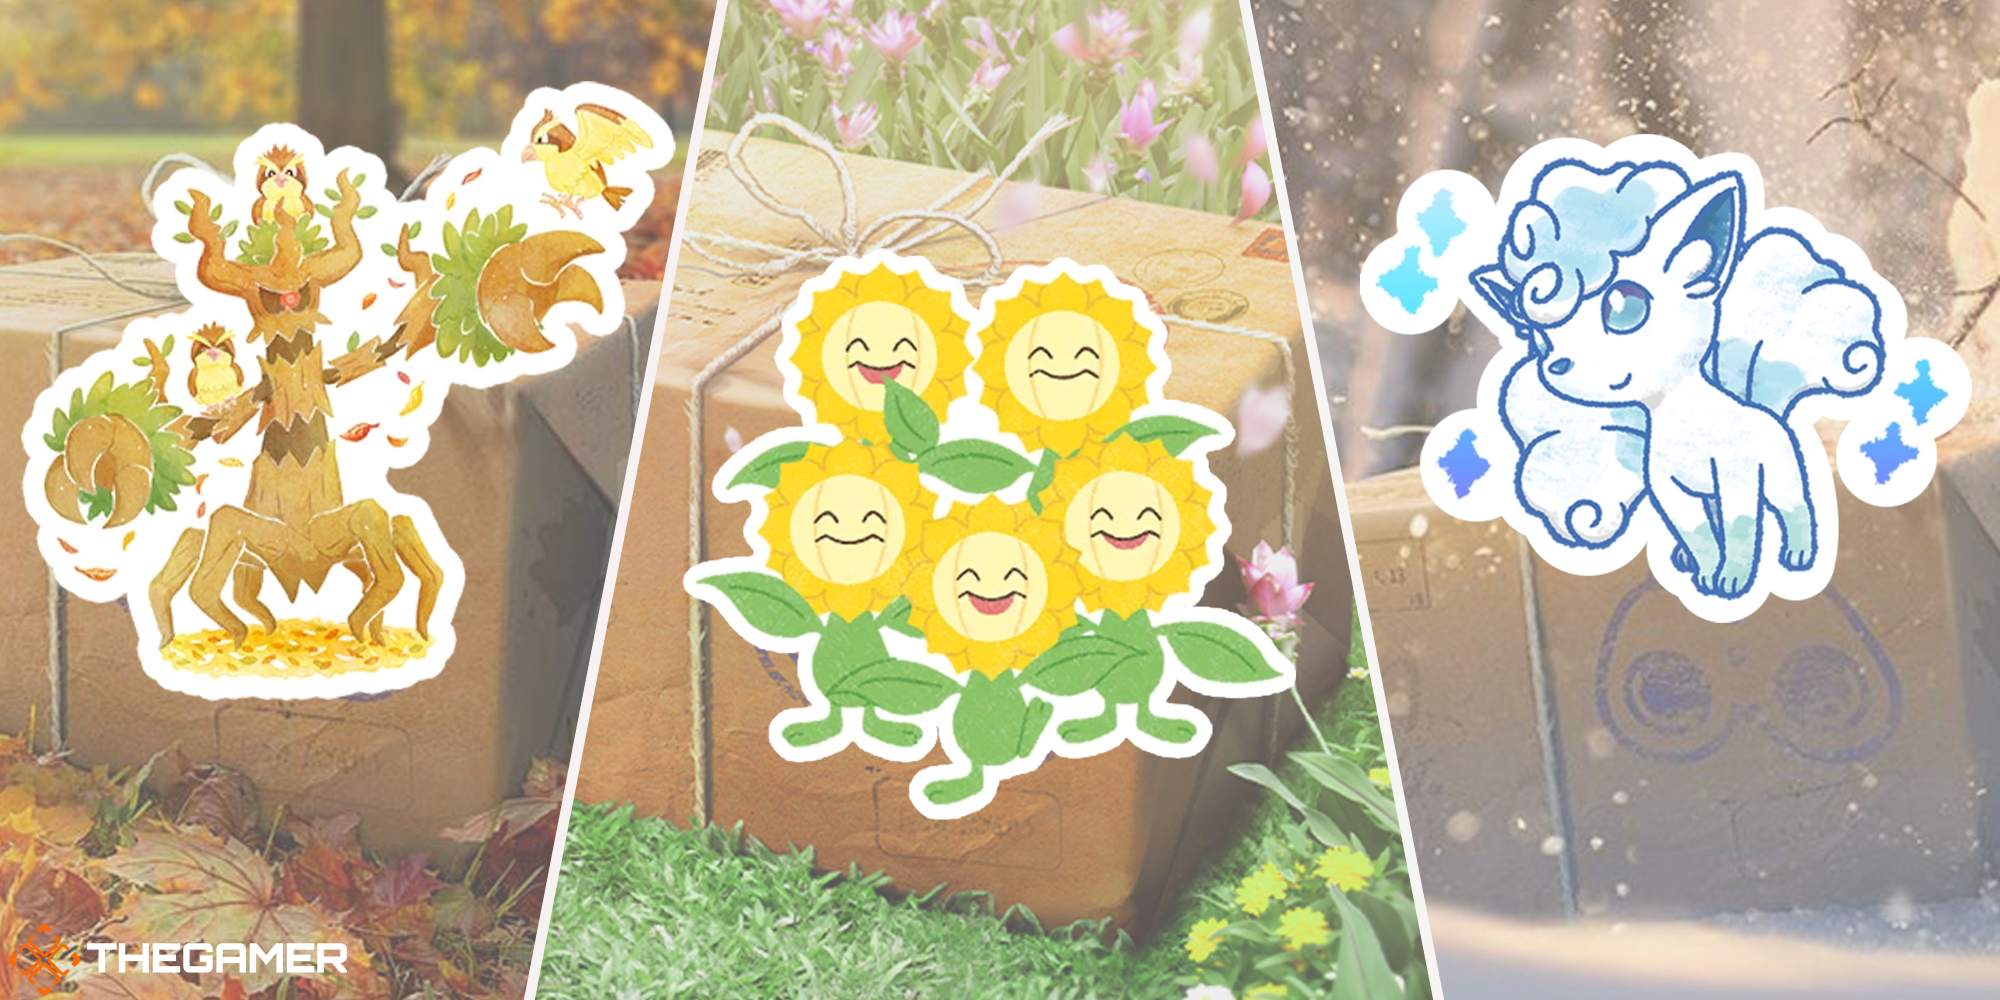 Cute Eevee Pokemon Sticker - Free Pokemon PNG Stickers